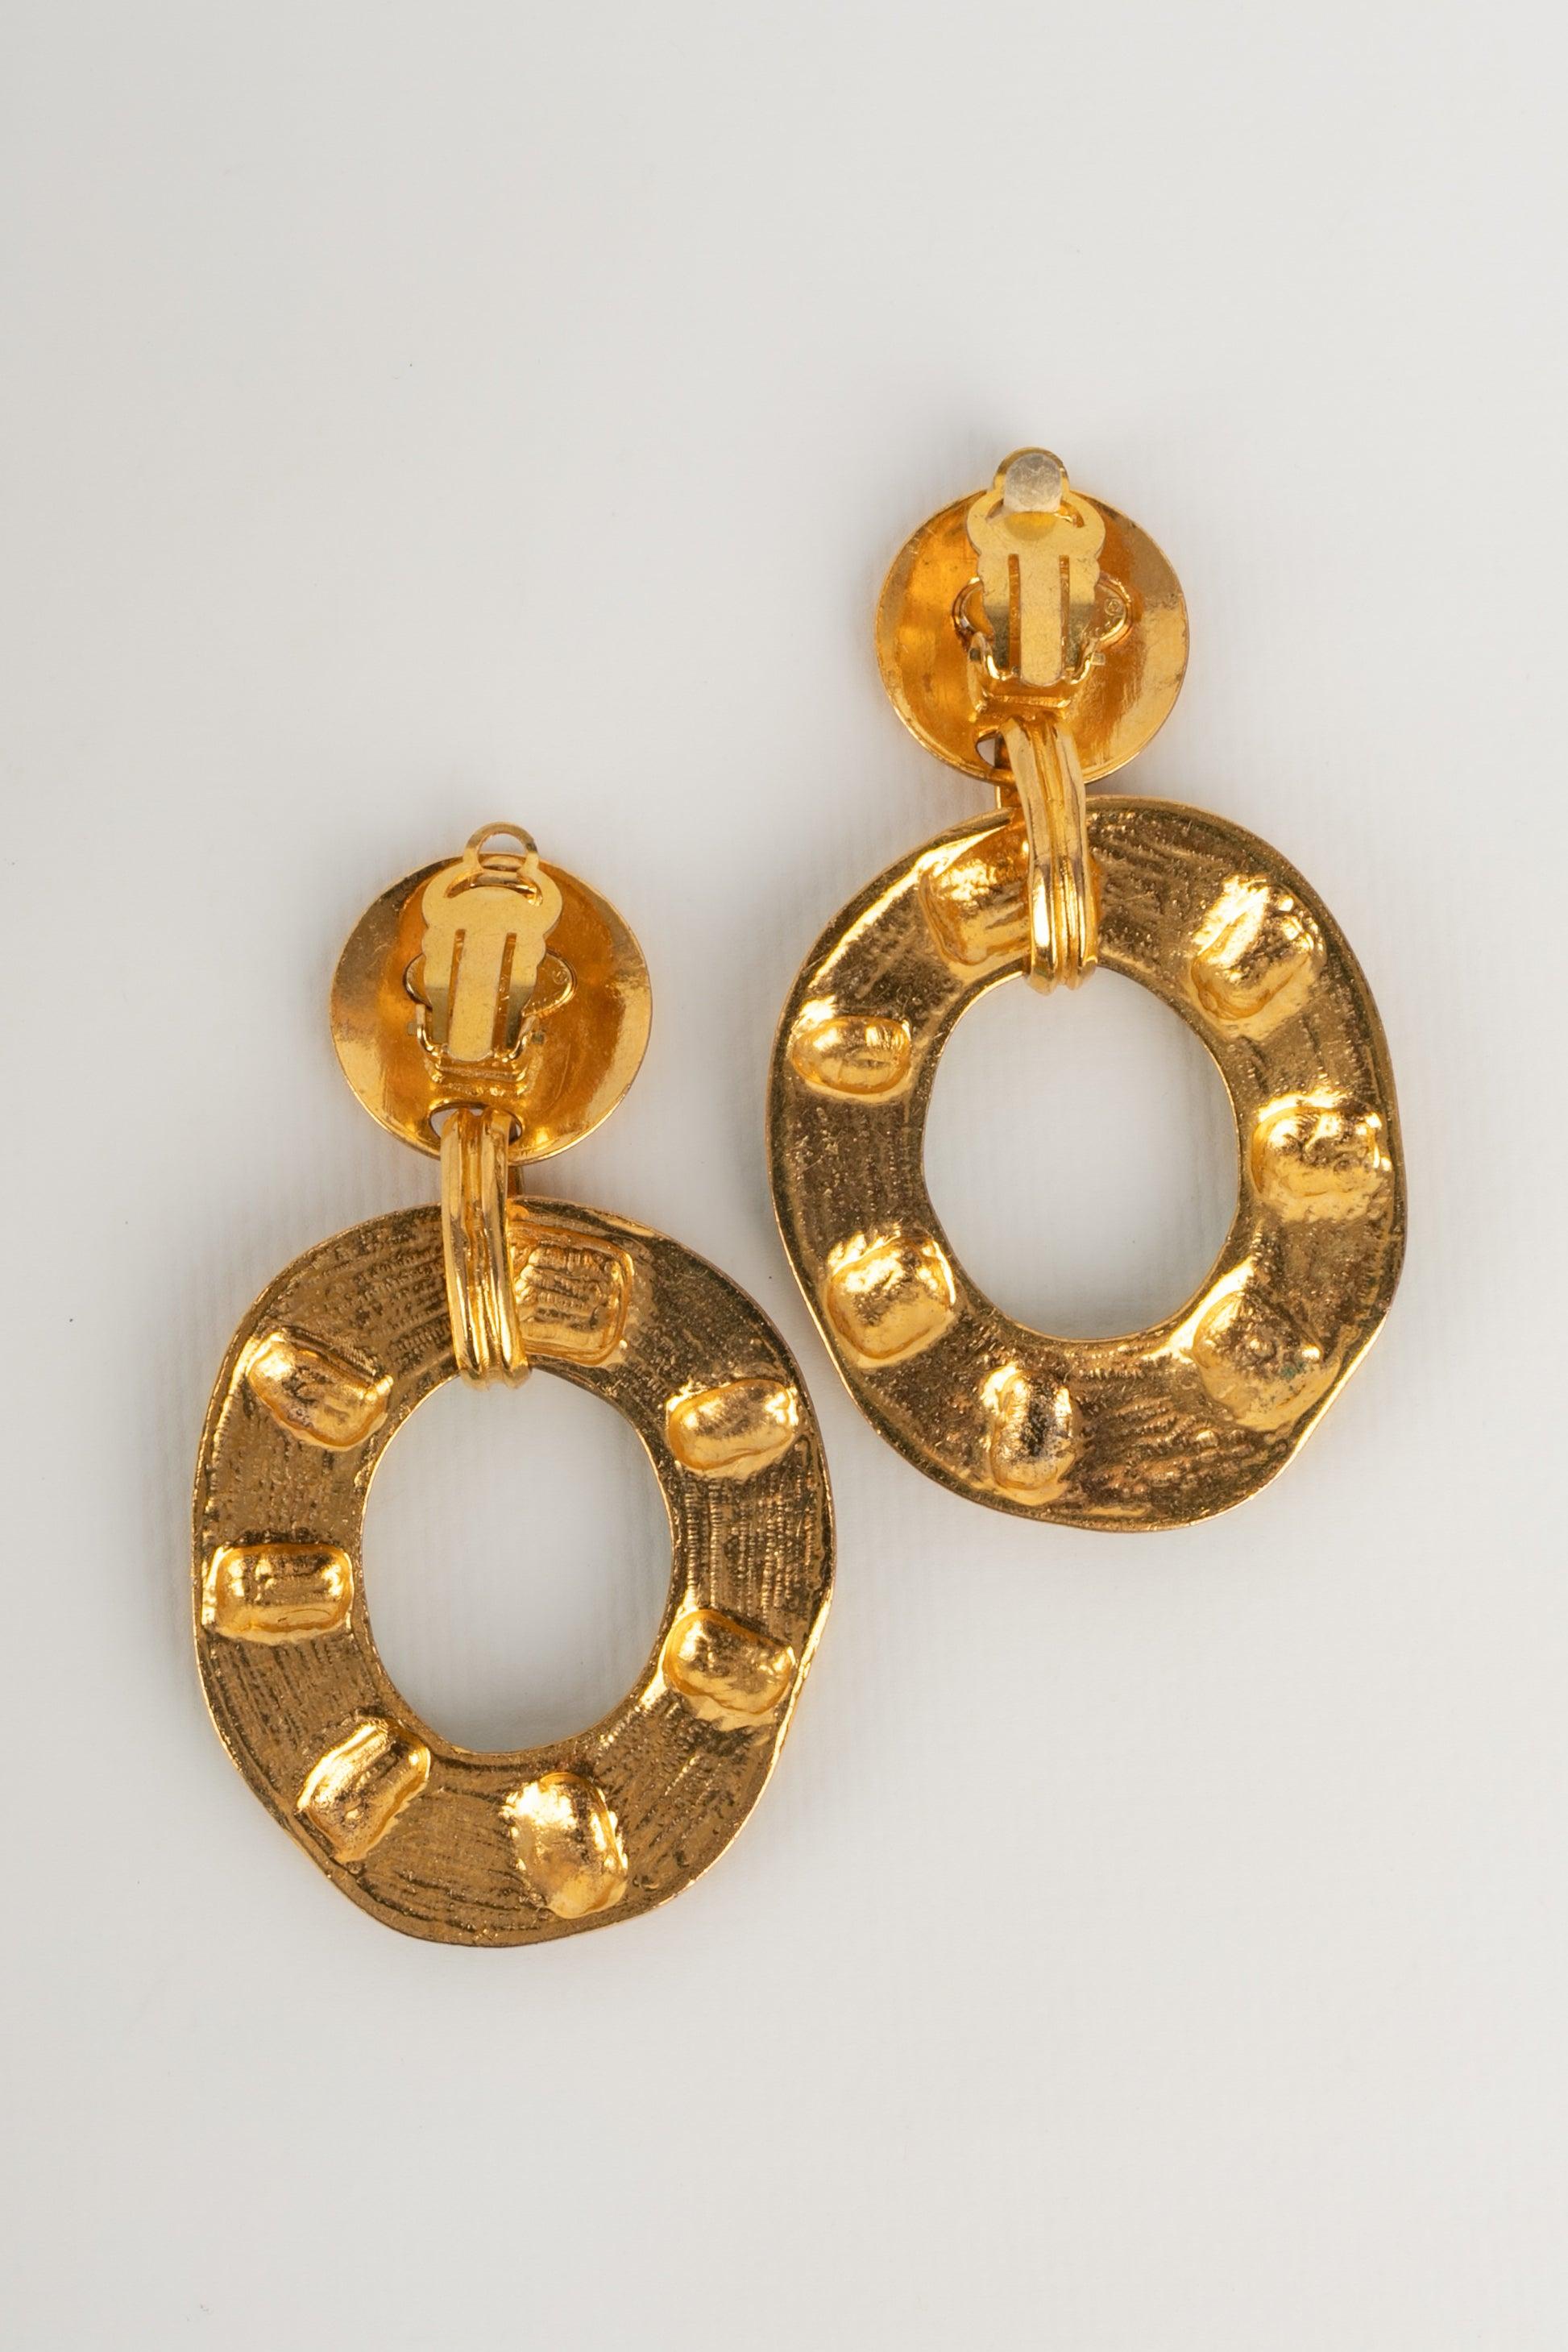 Chanel - (Fabriqué en France) Boucles d'oreilles en métal doré avec pâte de verre bleue. Printemps-été 1993 Collectional.

Informations complémentaires :
Condit : Très bon état.
Dimensions : Hauteur : 8 cm

Référence du vendeur : BOB165